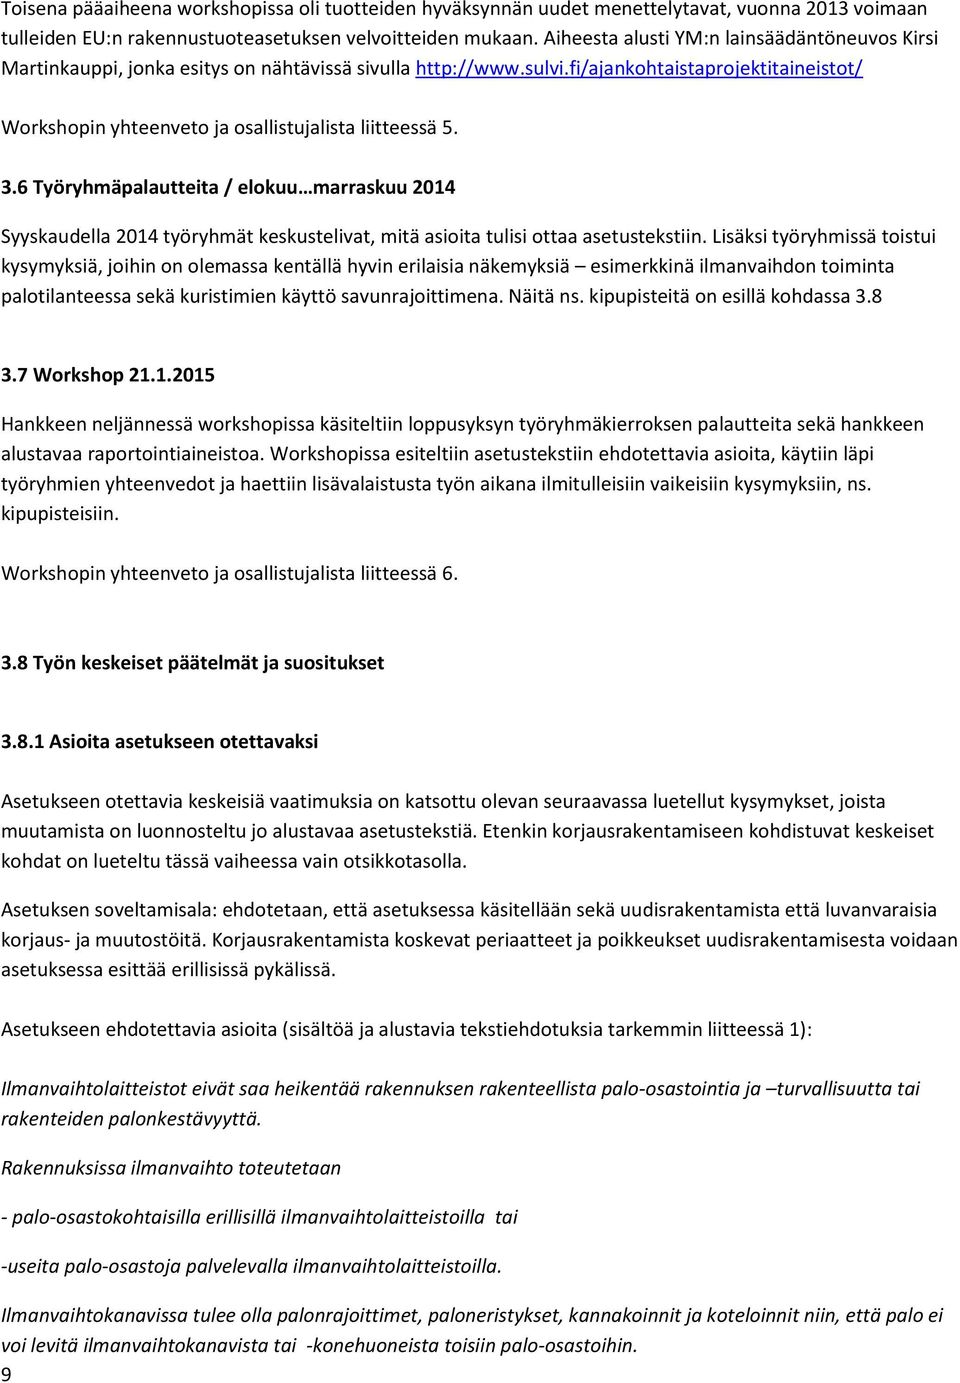 fi/ajankohtaistaprojektitaineistot/ Workshopin yhteenveto ja osallistujalista liitteessä 5. 3.